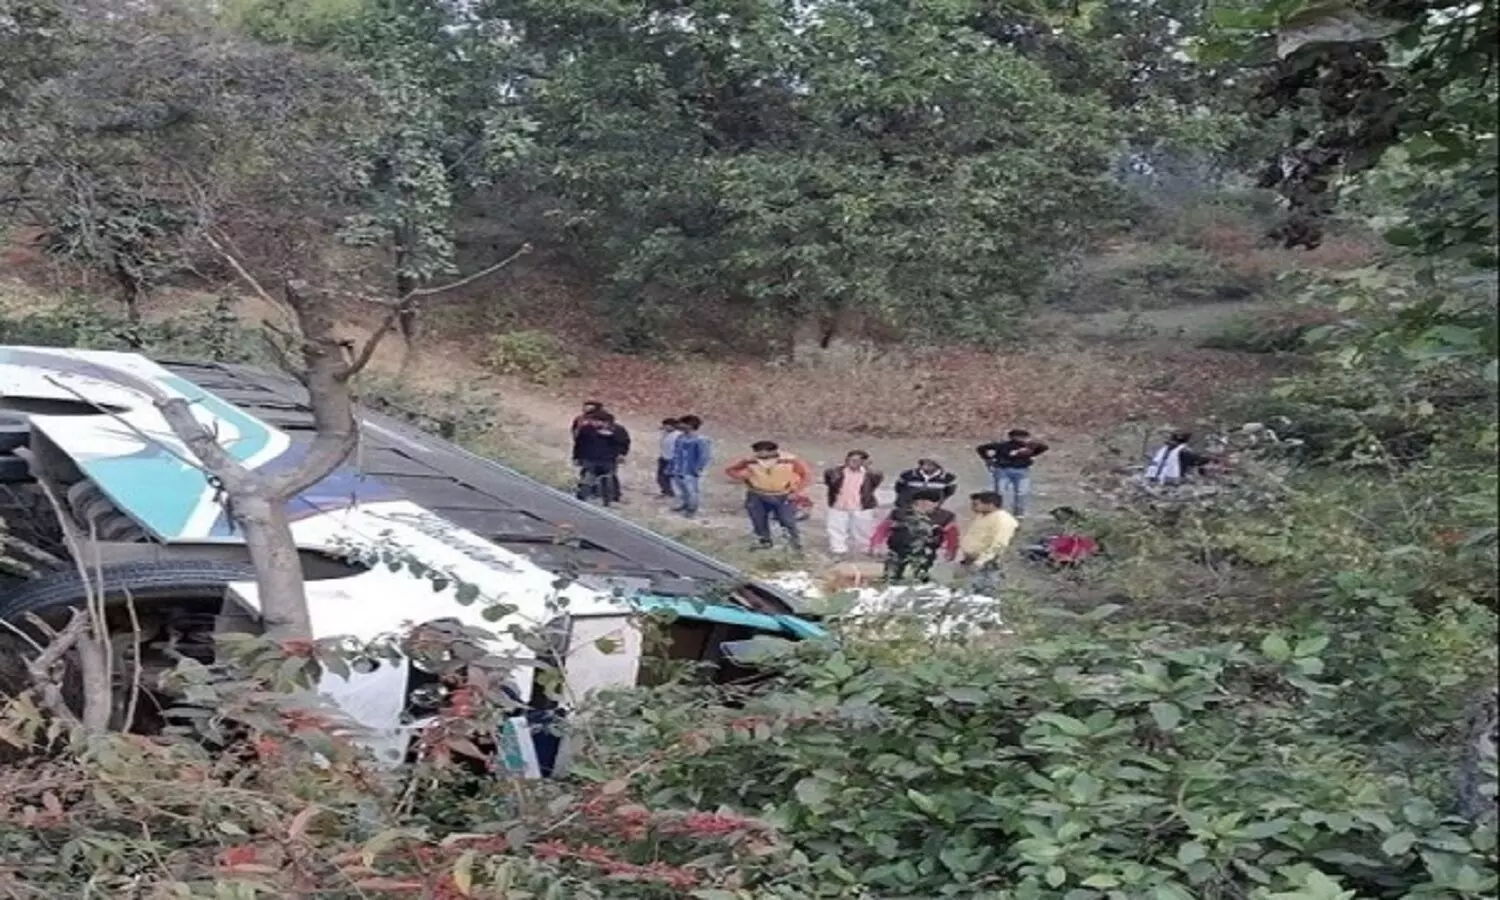 Shahdol Bus Accident: शहडोल में बस हादसा, 150 फ़ीट गहरी खाई में गिरी यात्रियों से भरी बस, 3 की मौत